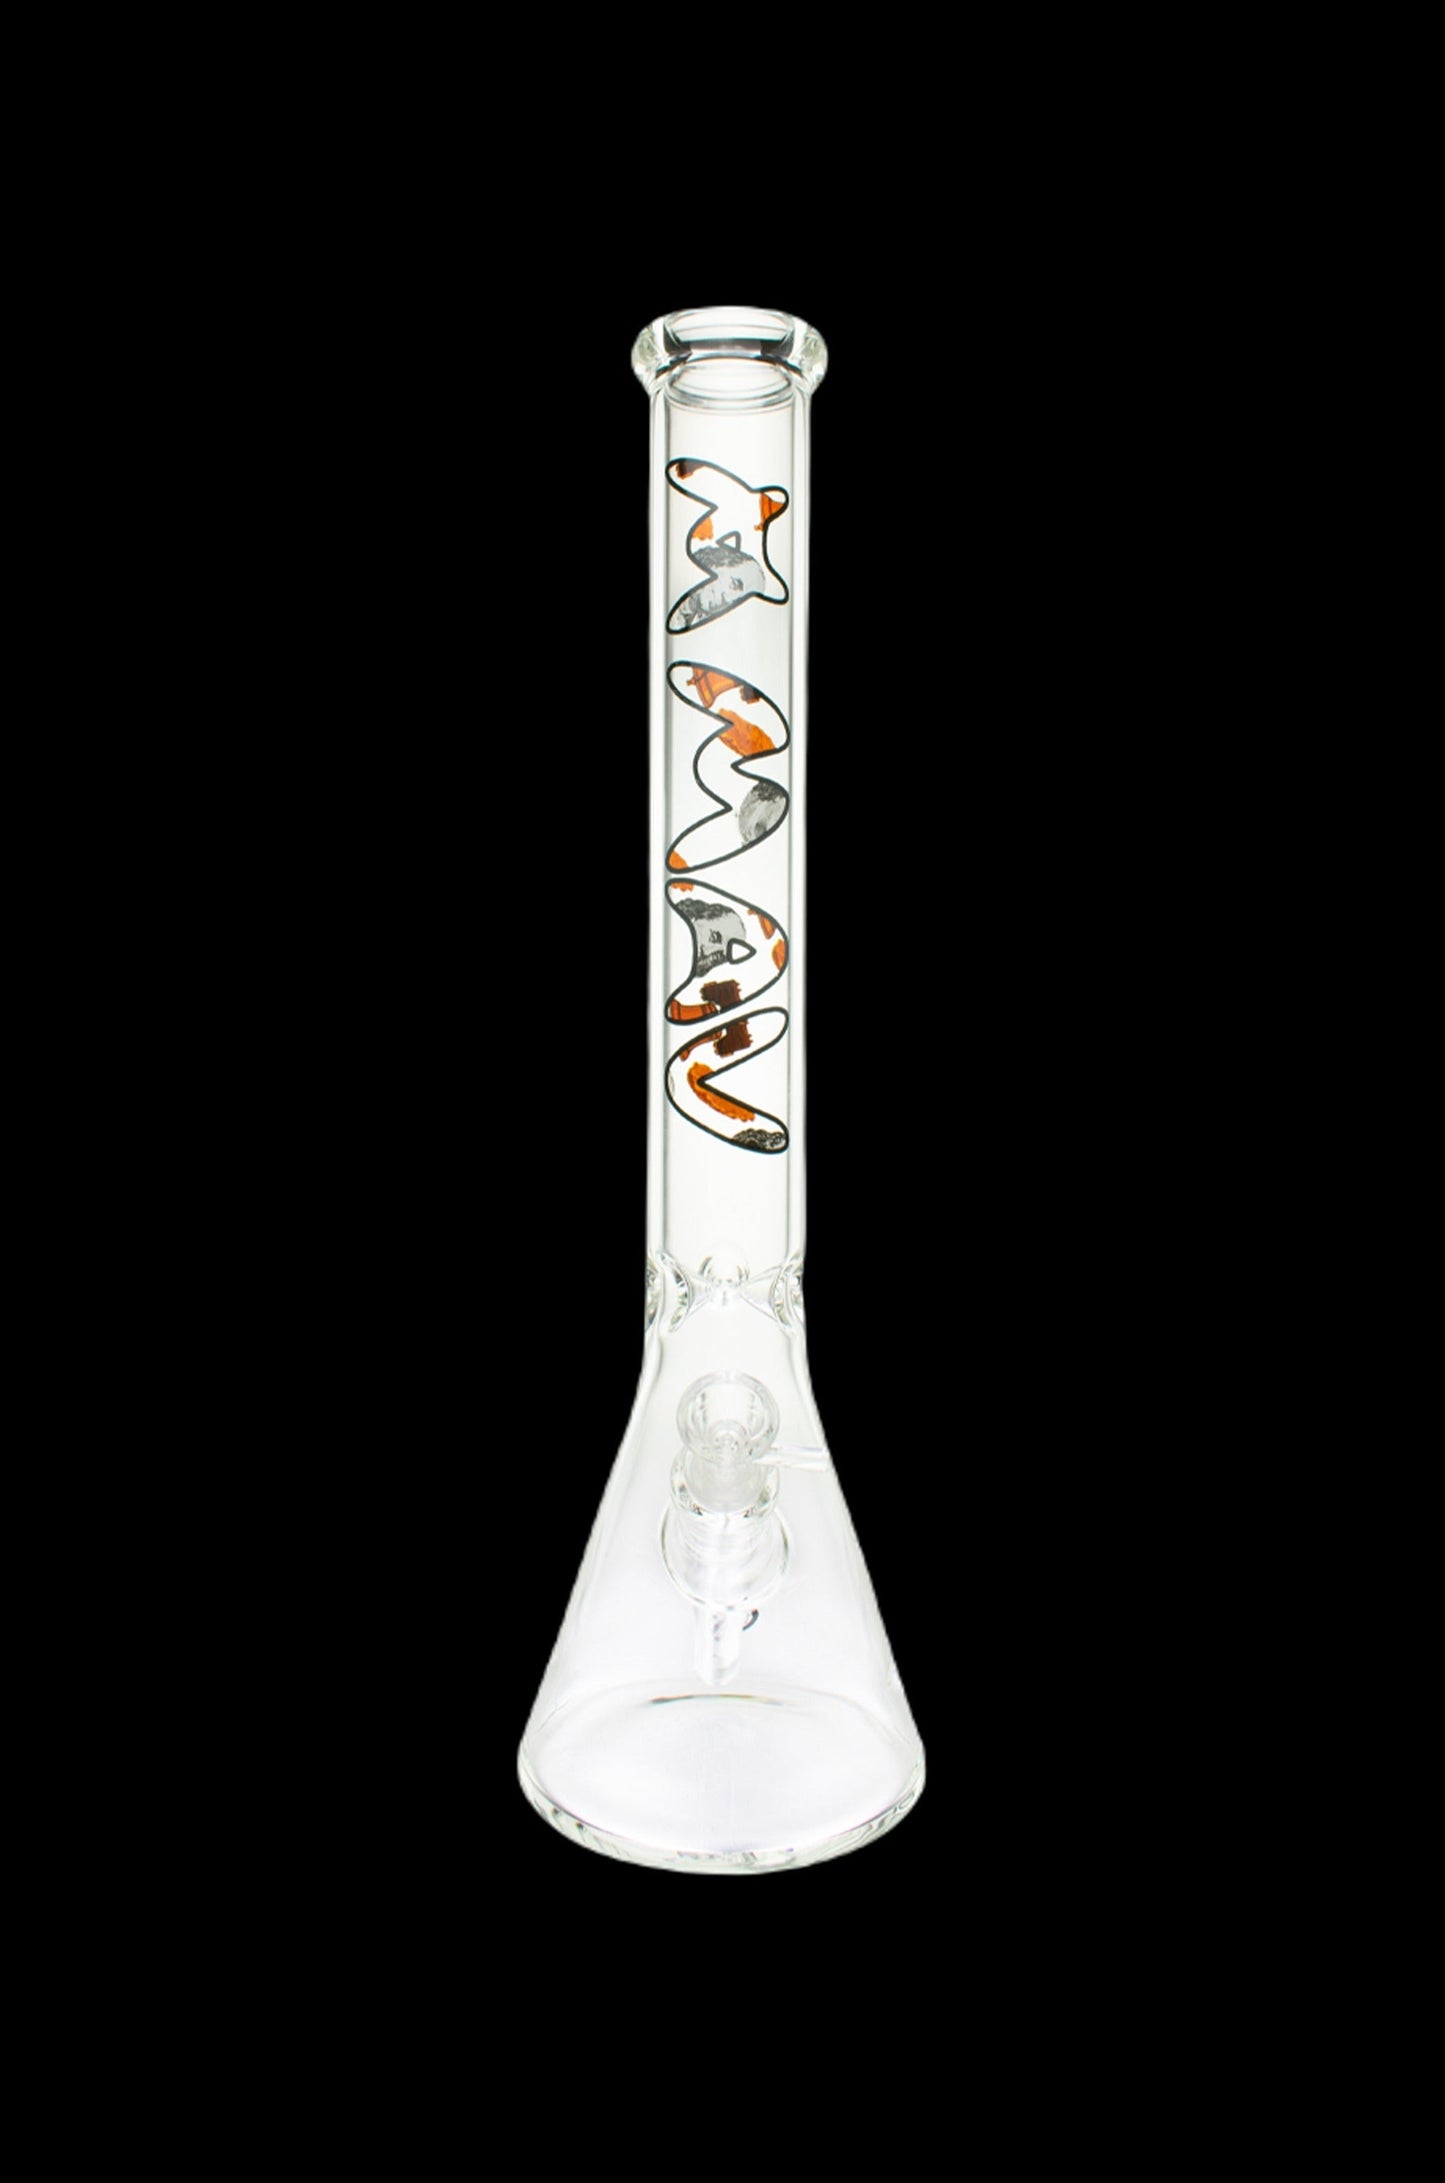 MAV Glass Top City Beaker Bong Best Sales Price - Bongs